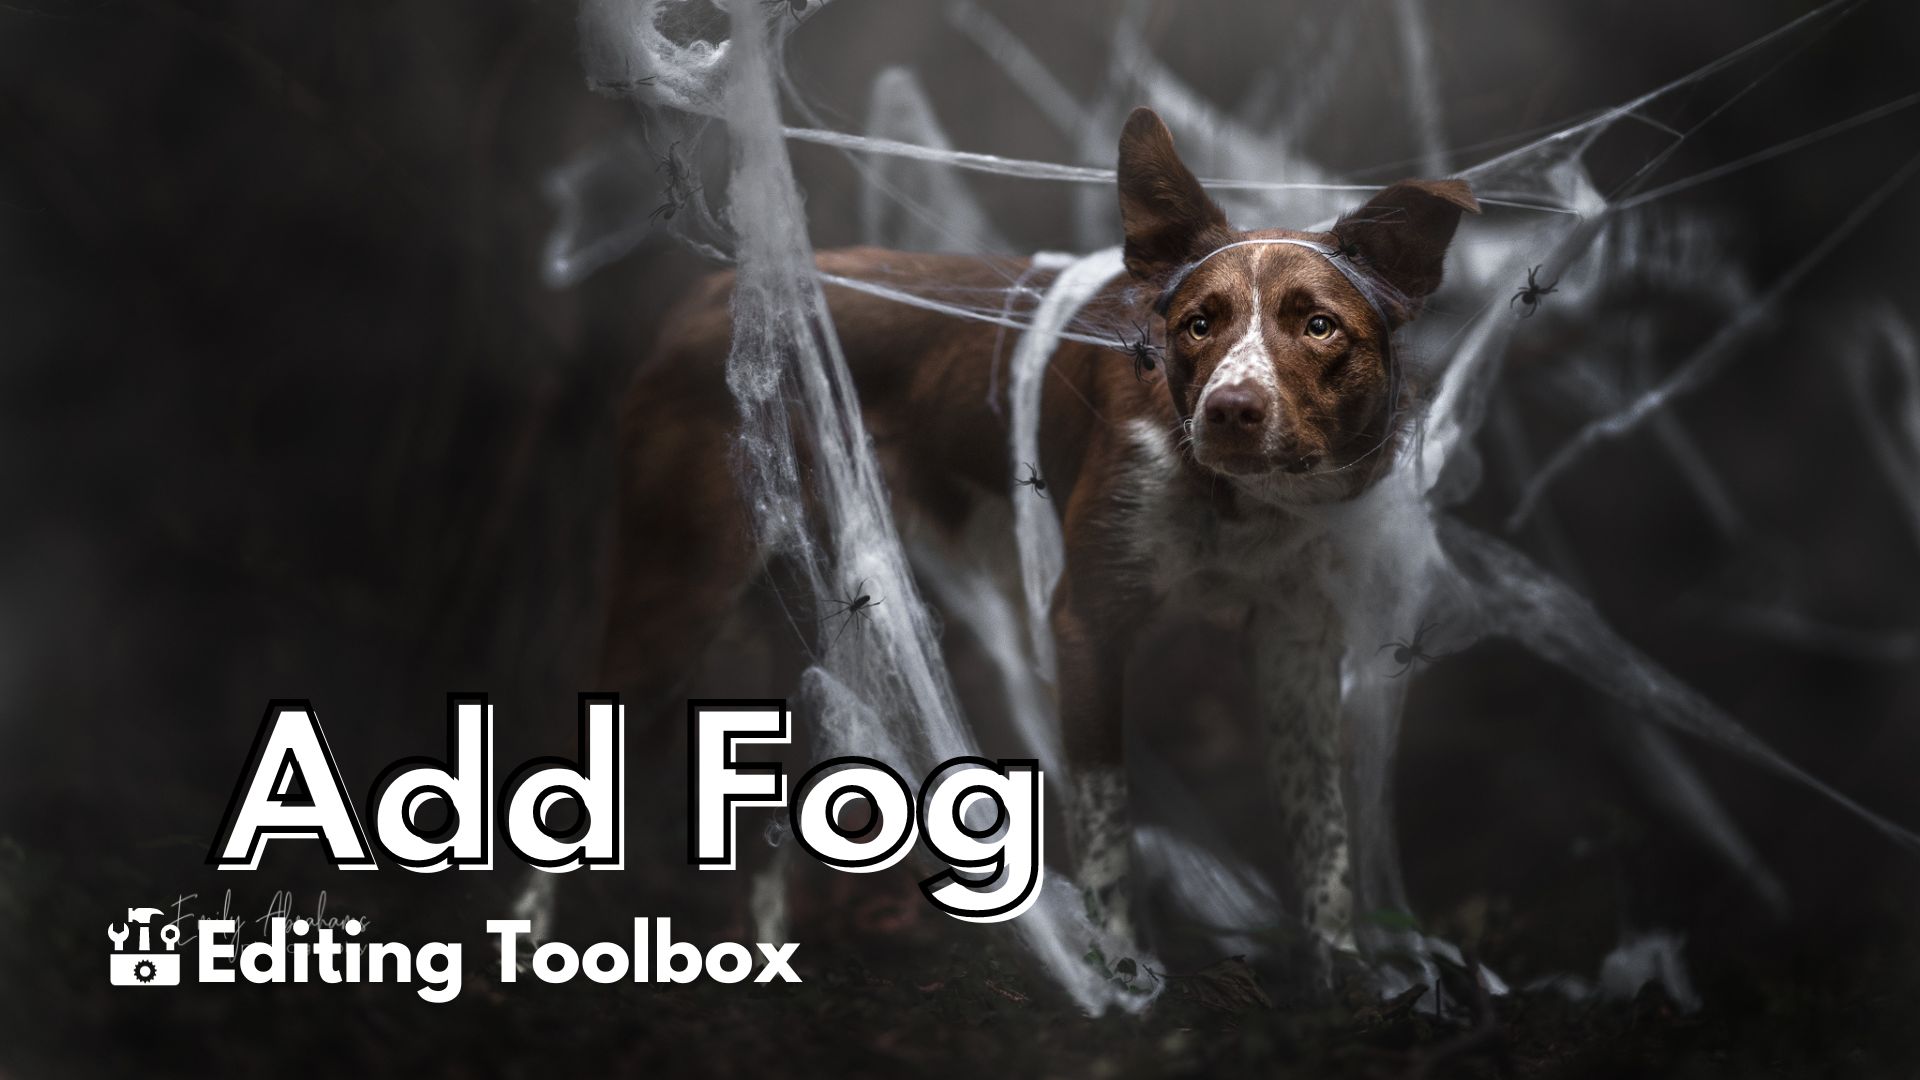 Editing Toolbox: Add Fog